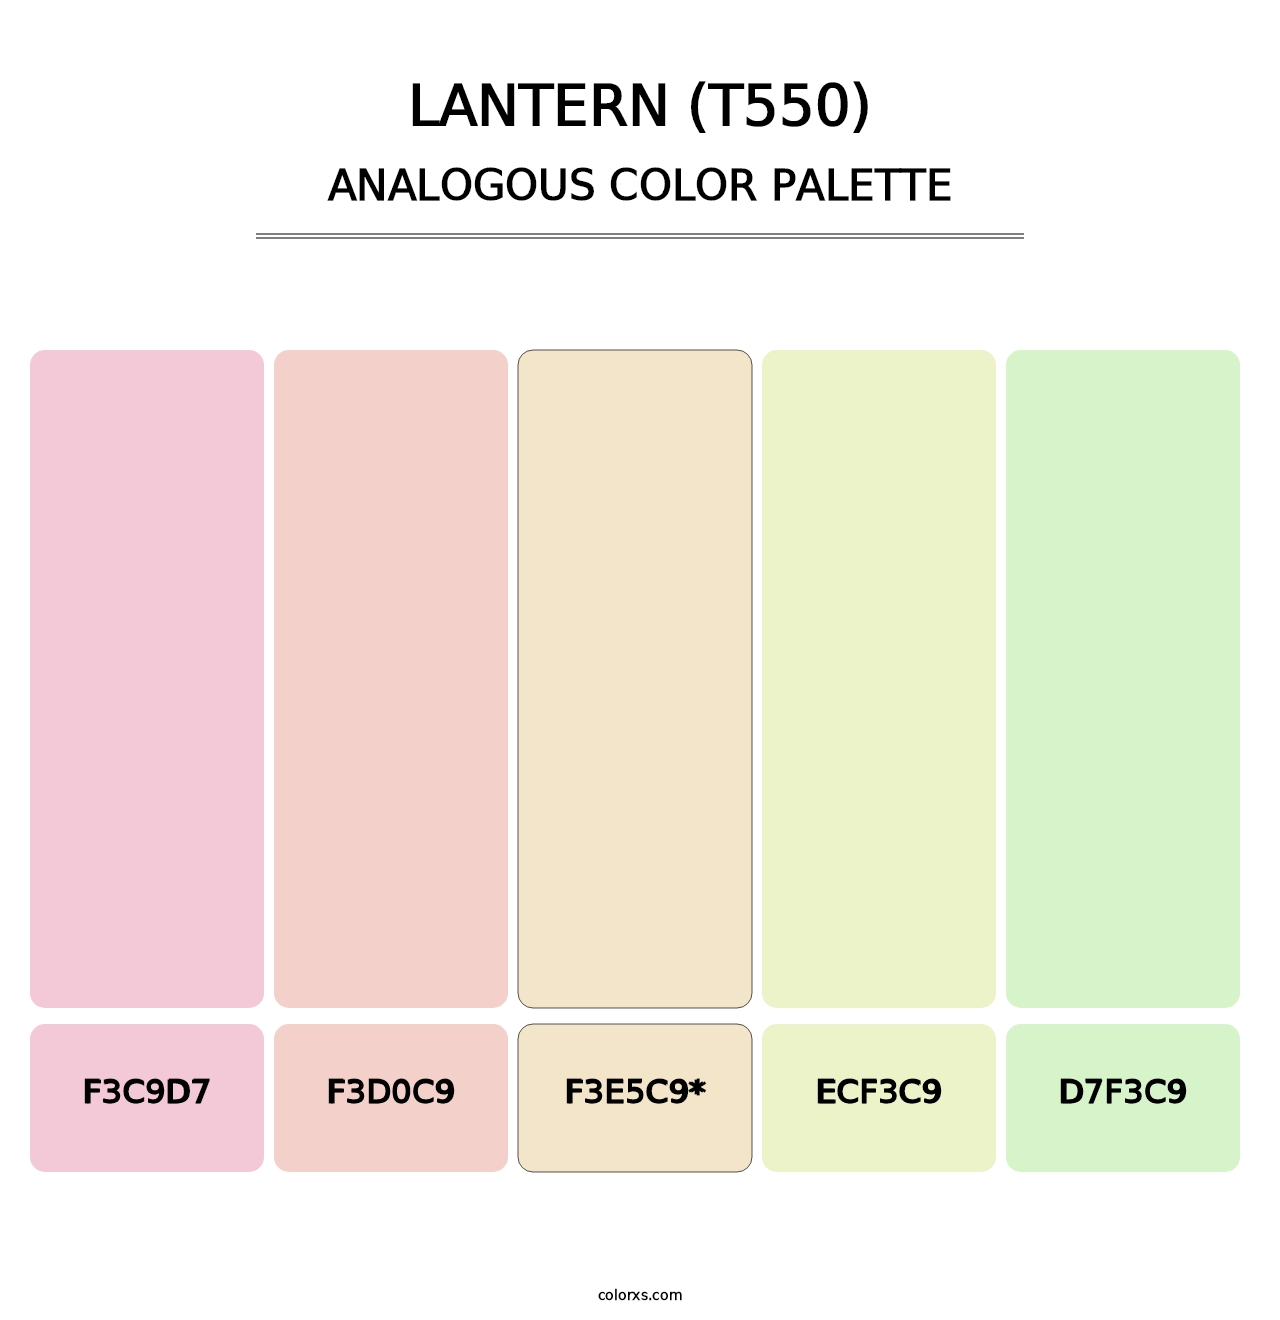 Lantern (T550) - Analogous Color Palette